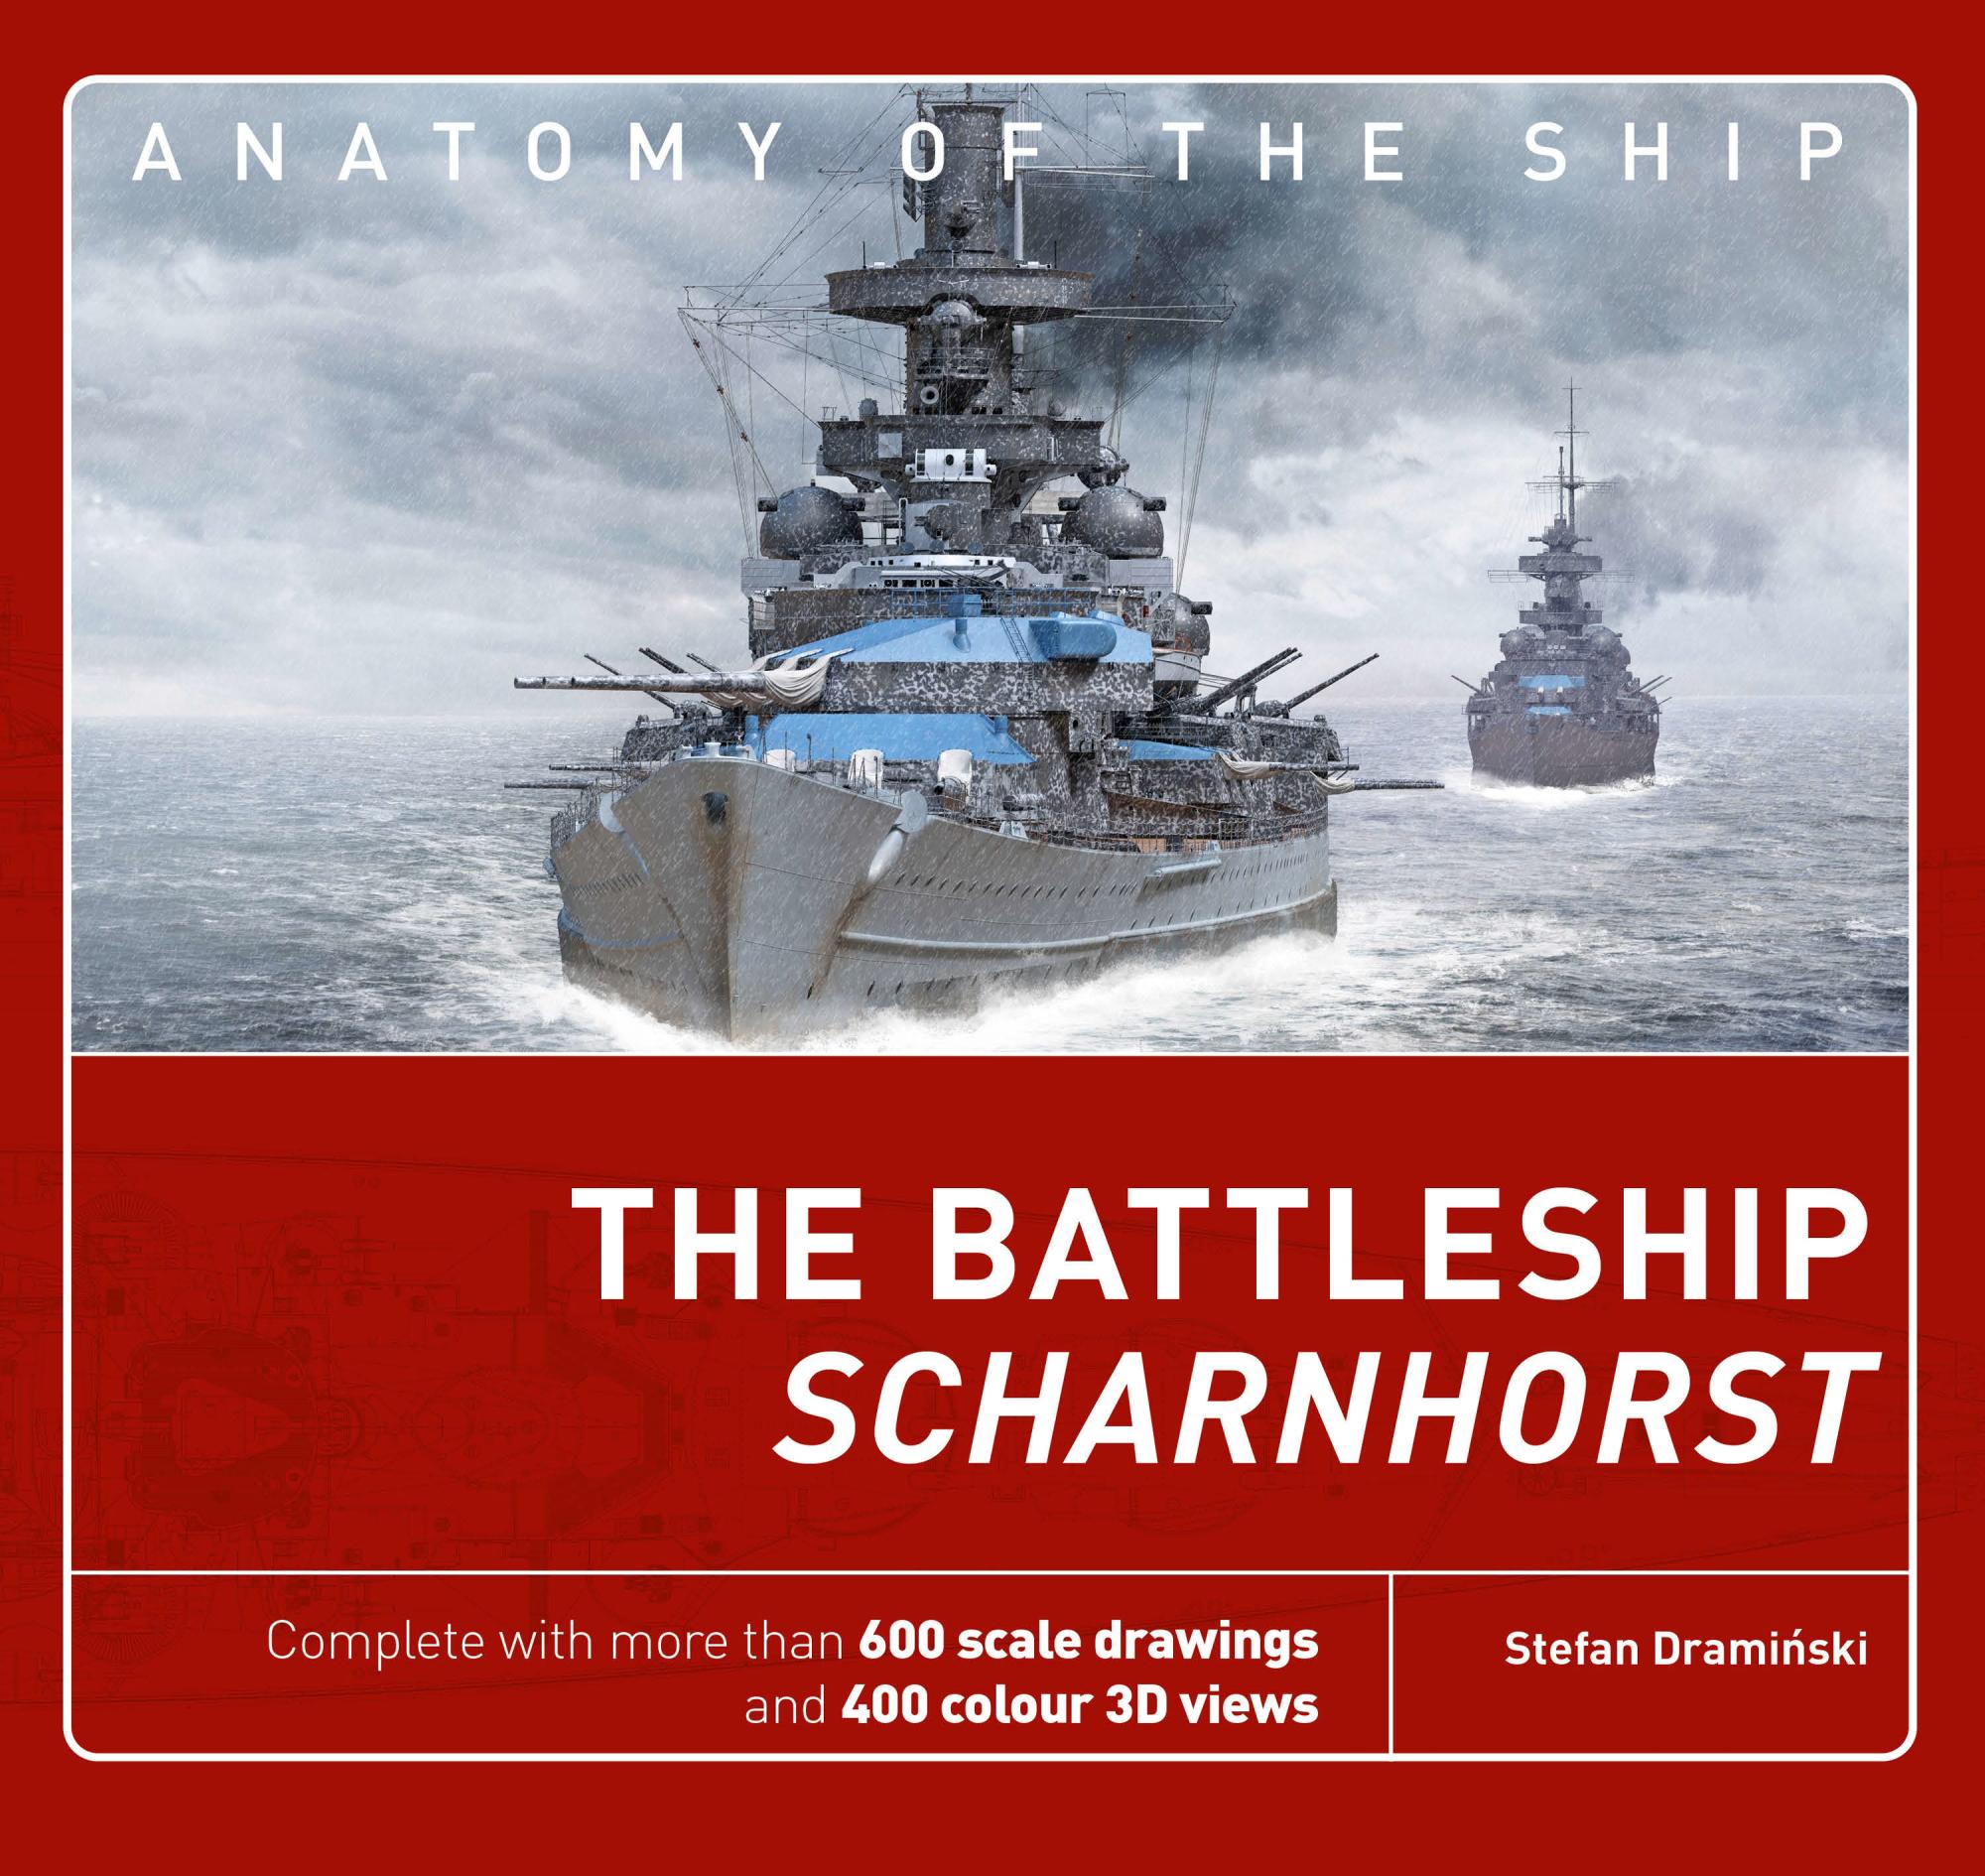 AotS_The_Battleship_Scharnhorst_03.jpg